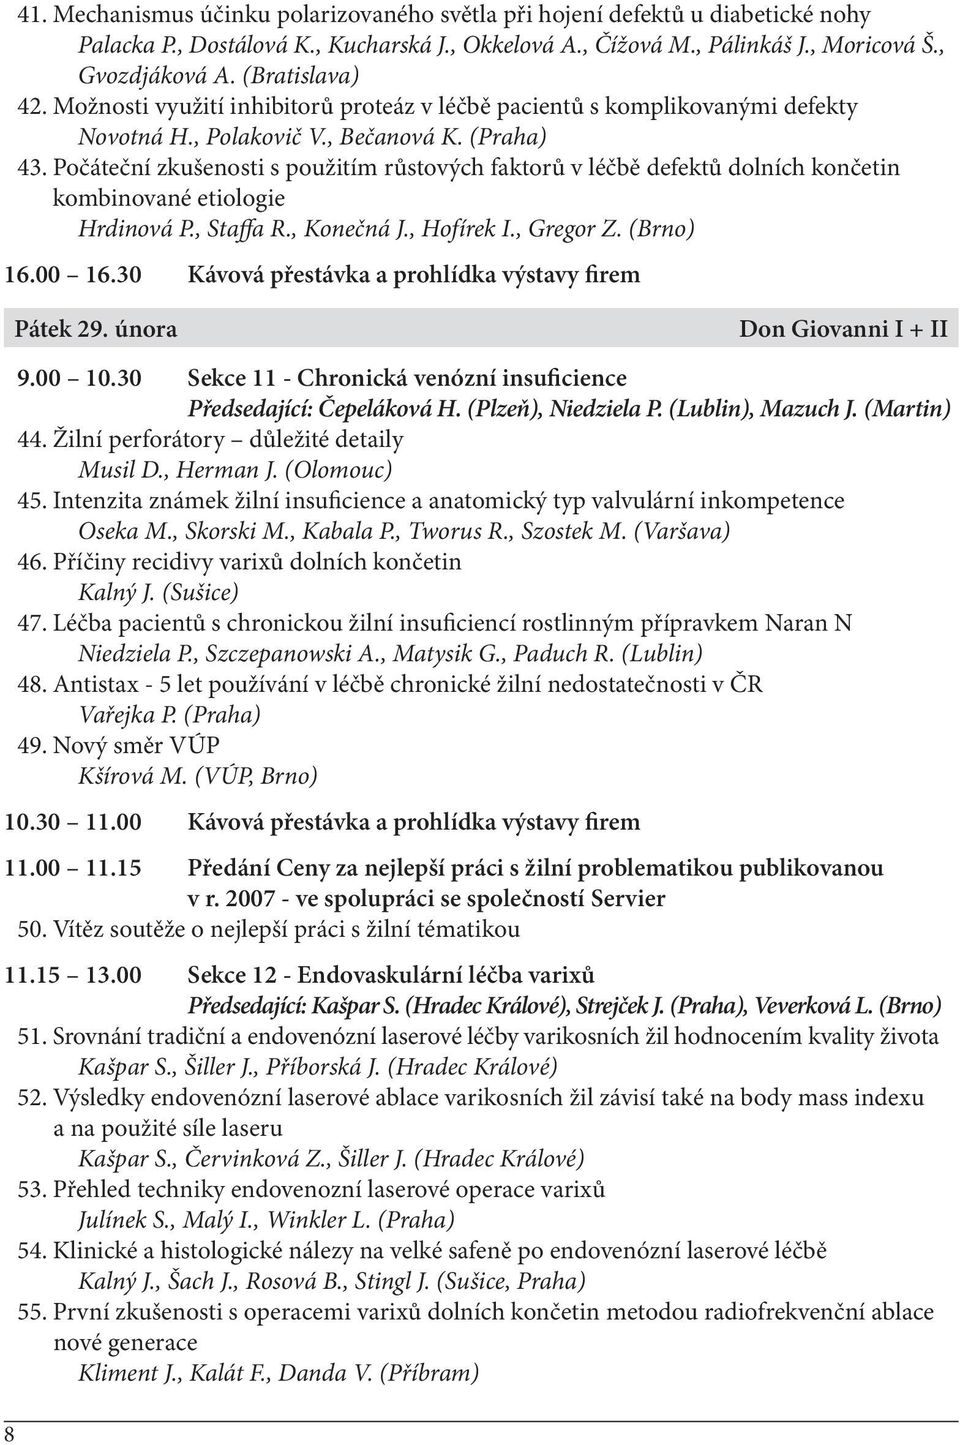 Počáteční zkušenosti s použitím růstových faktorů v léčbě defektů dolních končetin kombinované etiologie Hrdinová P., Staffa R., Konečná J., Hofírek I., Gregor Z. (Brno) 16.00 16.